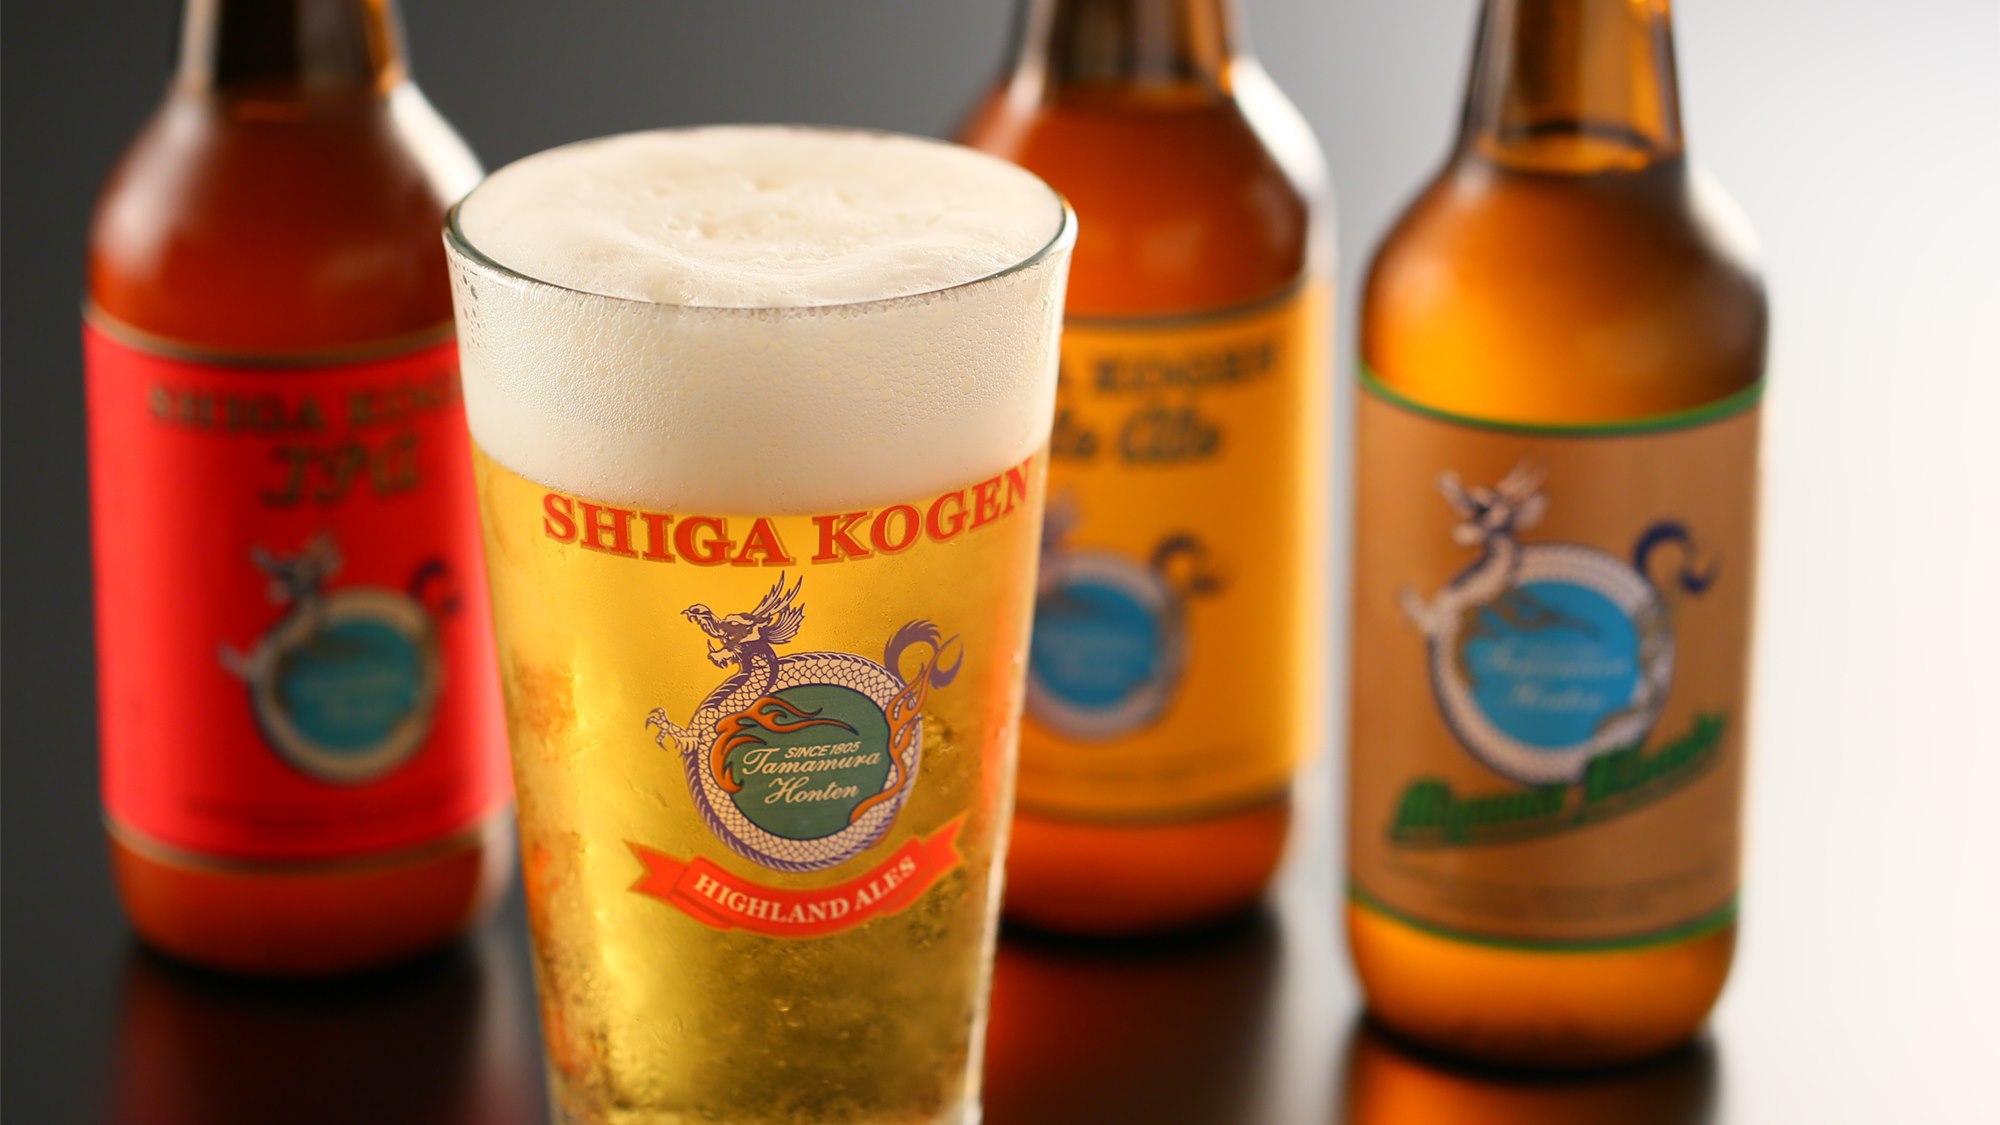  人気の志賀高原ビール、生ビールもご用意しております。